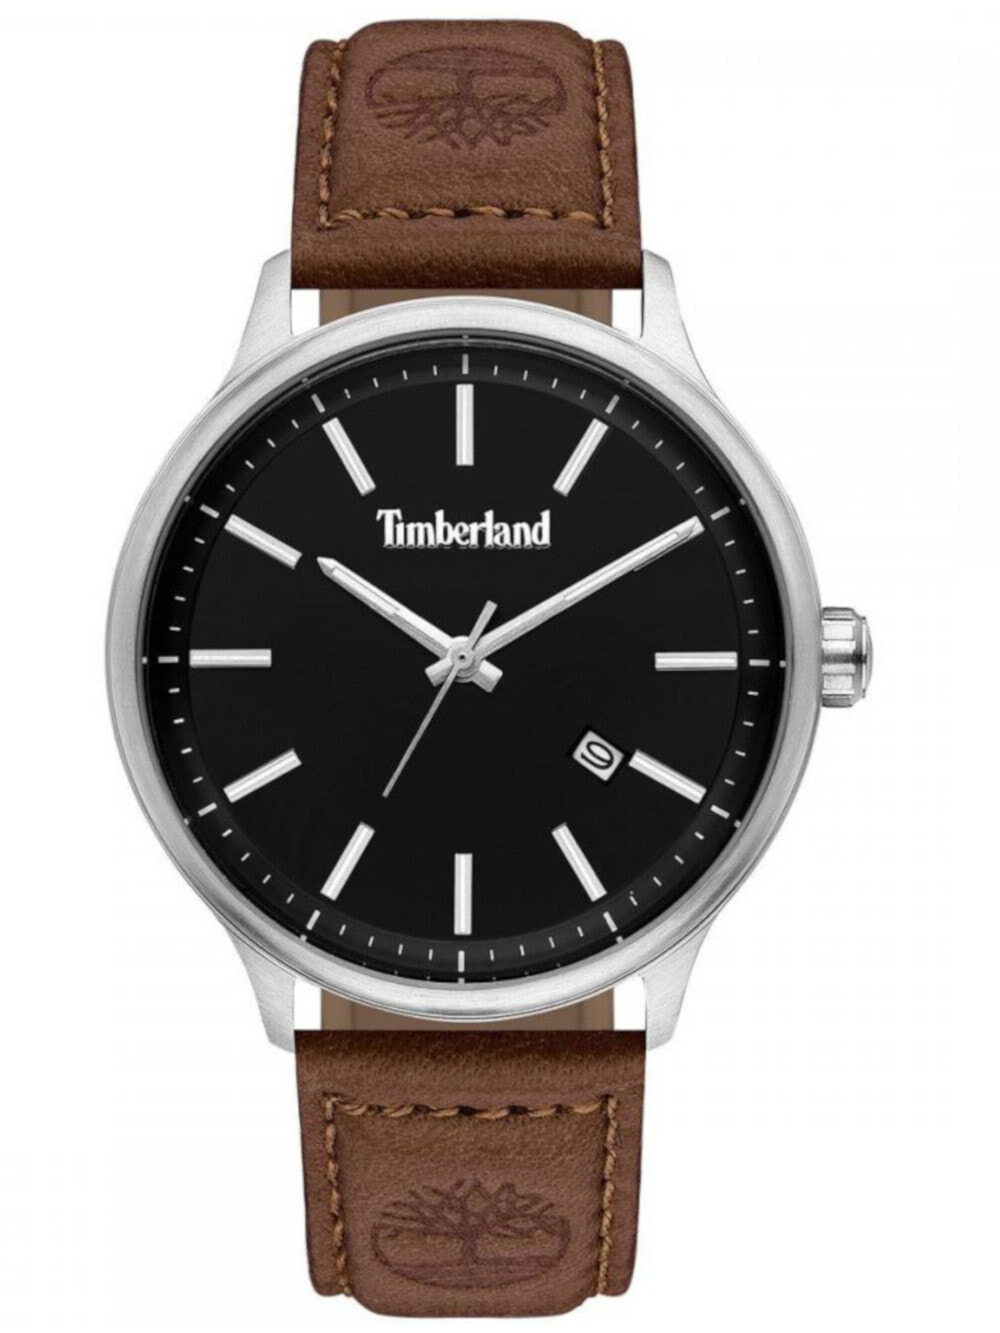 Мужские наручные часы с коричневым кожаным ремешком Timberland TBL15638JS.02 Allendale 45mm 5ATM